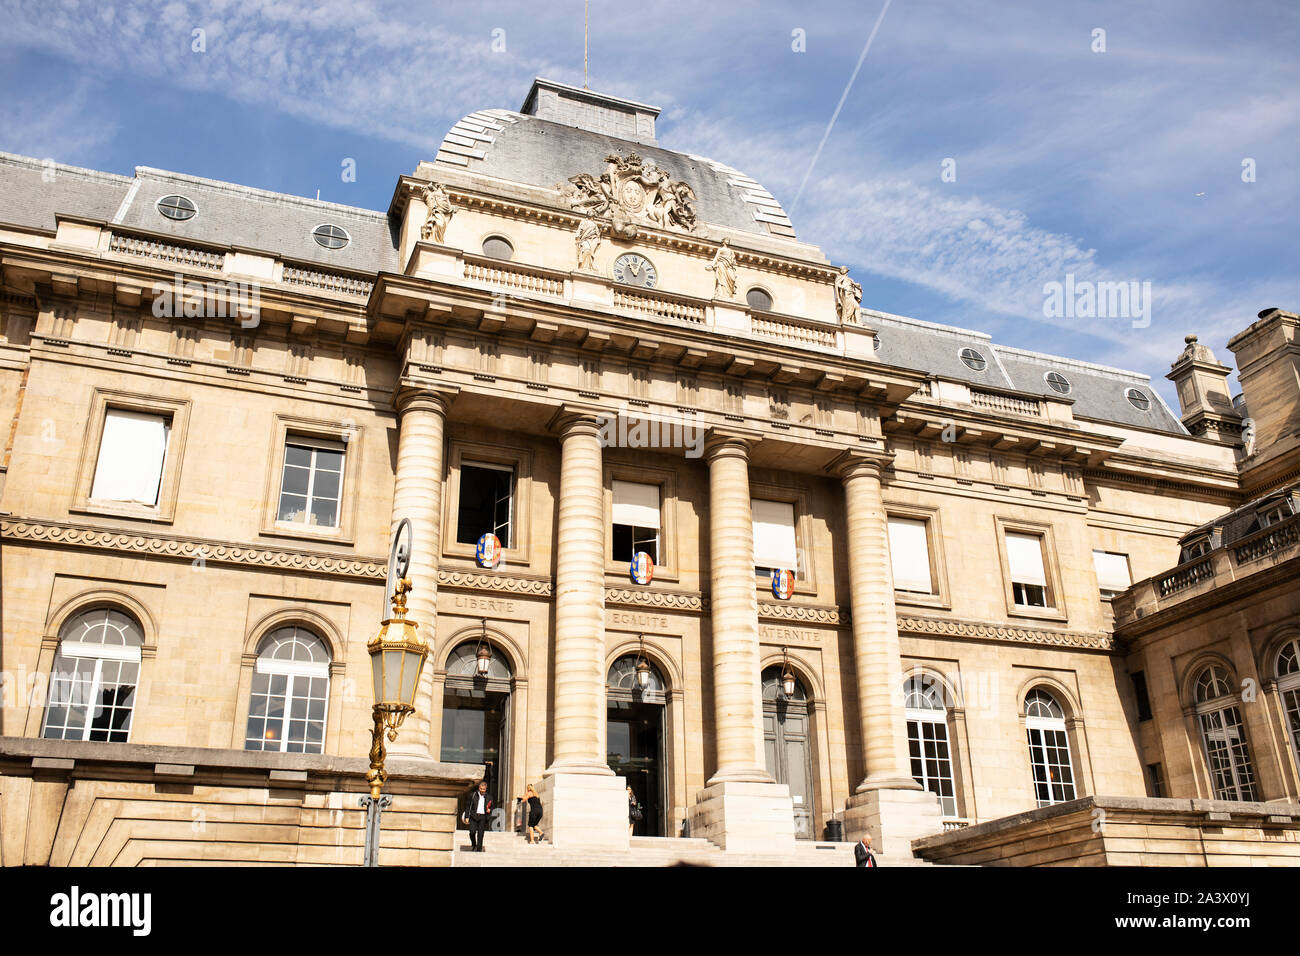 Die Fassade des Palais de Justice, oder Stadt Gerichtsgebäude, auf der Ile de la Cité in Paris, Frankreich. Stockfoto